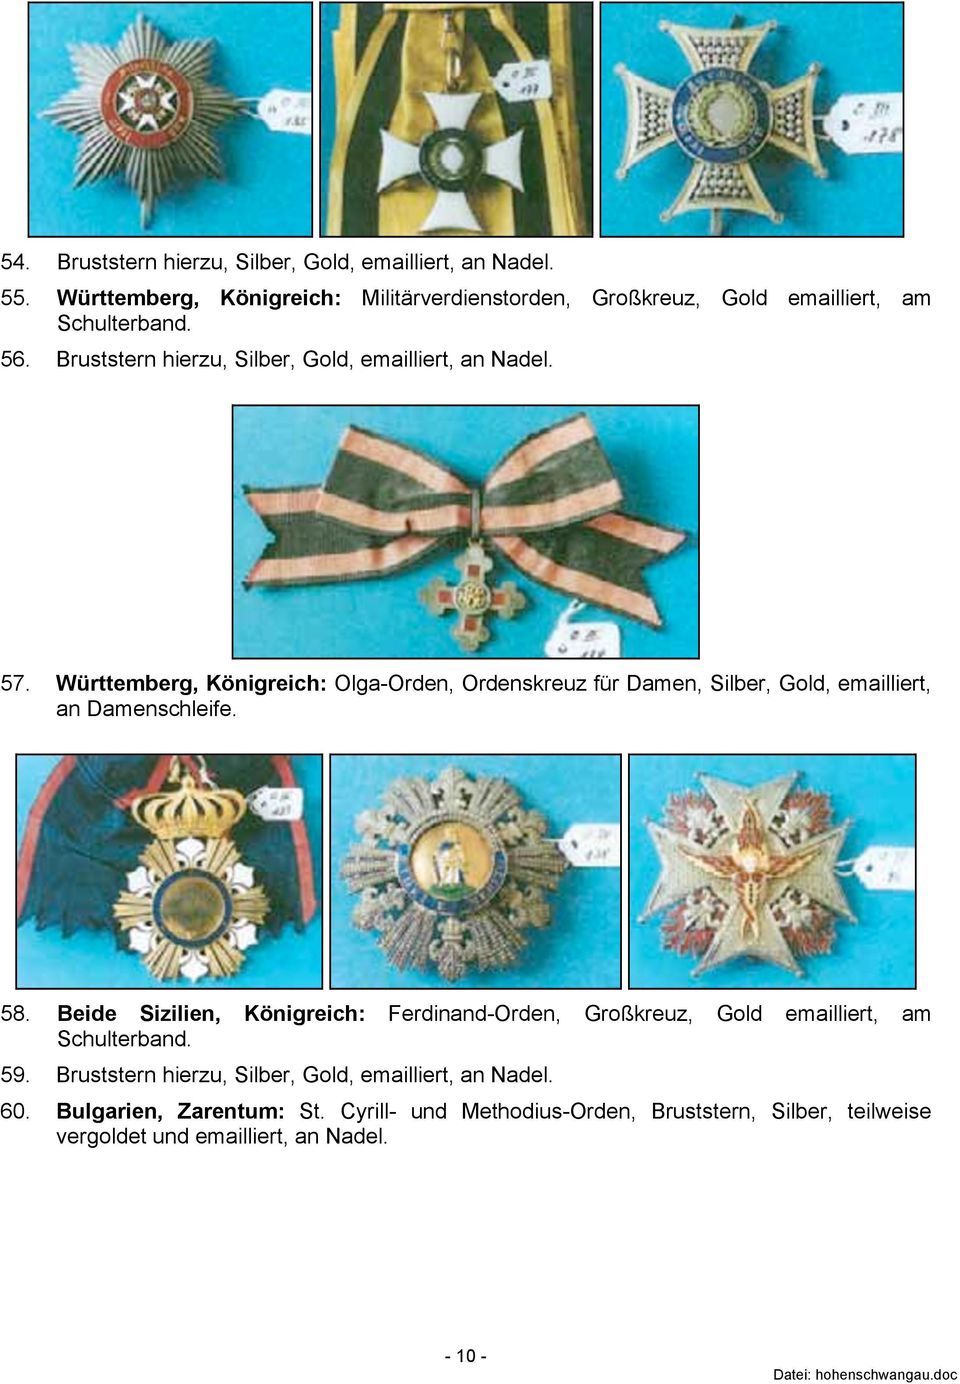 Württemberg, Königreich: Olga-Orden, Ordenskreuz für Damen, Silber, Gold, emailliert, an Damenschleife. 58.